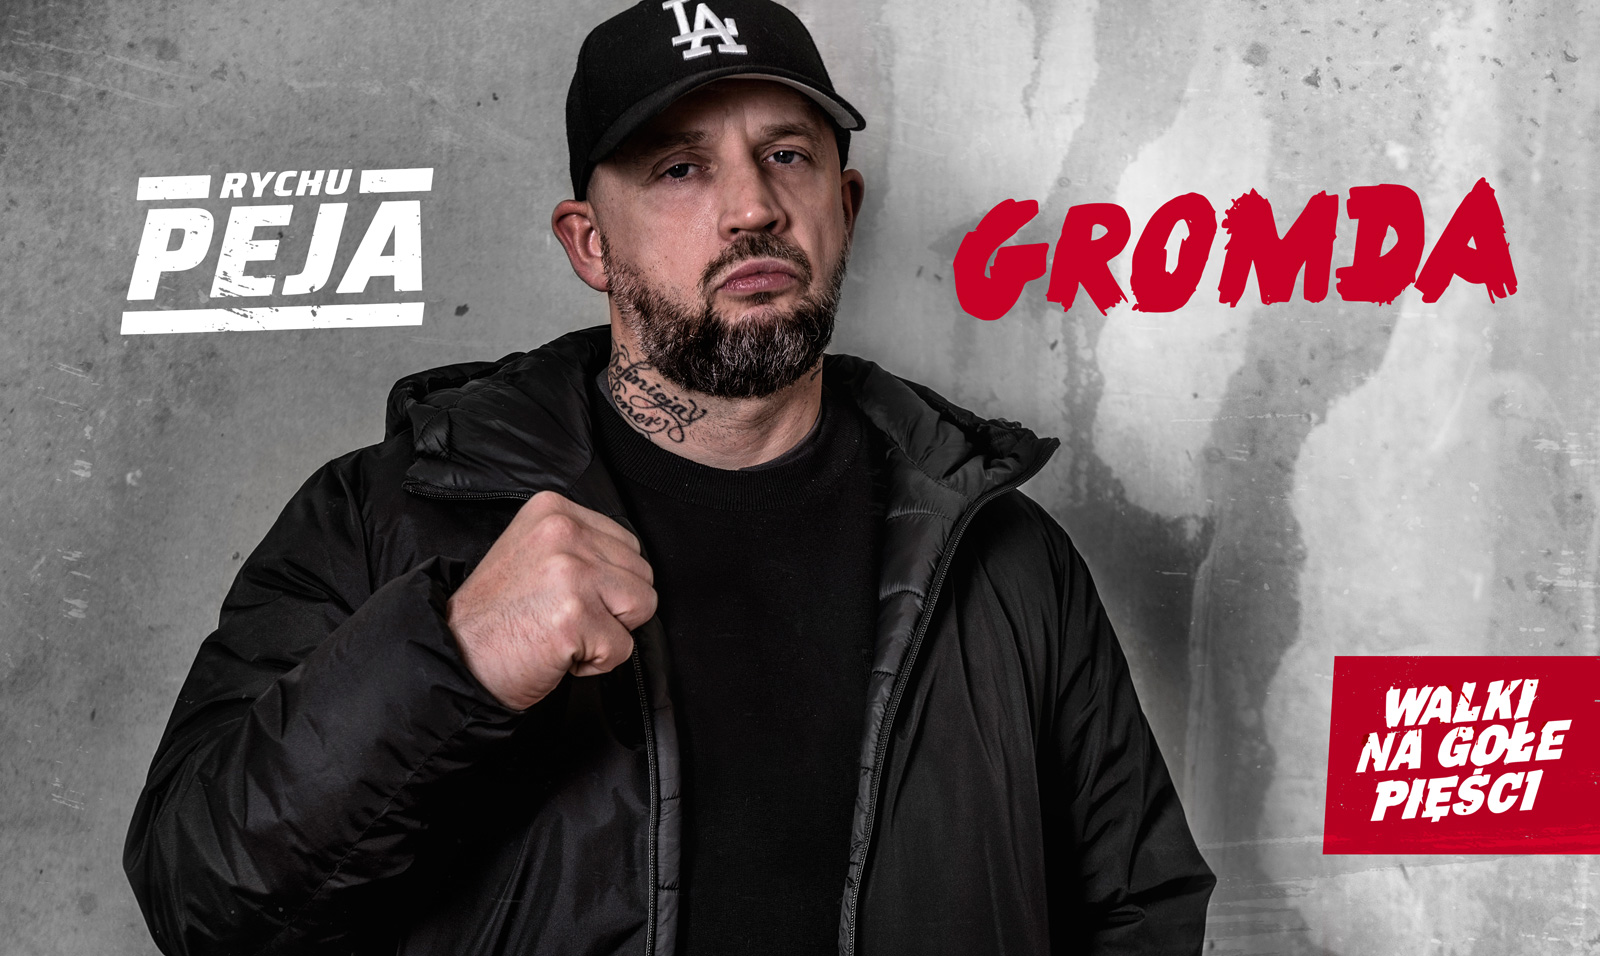 Peja Slums Attack legenda polskiego rapu w GROMDA: Walki na gołe pięści